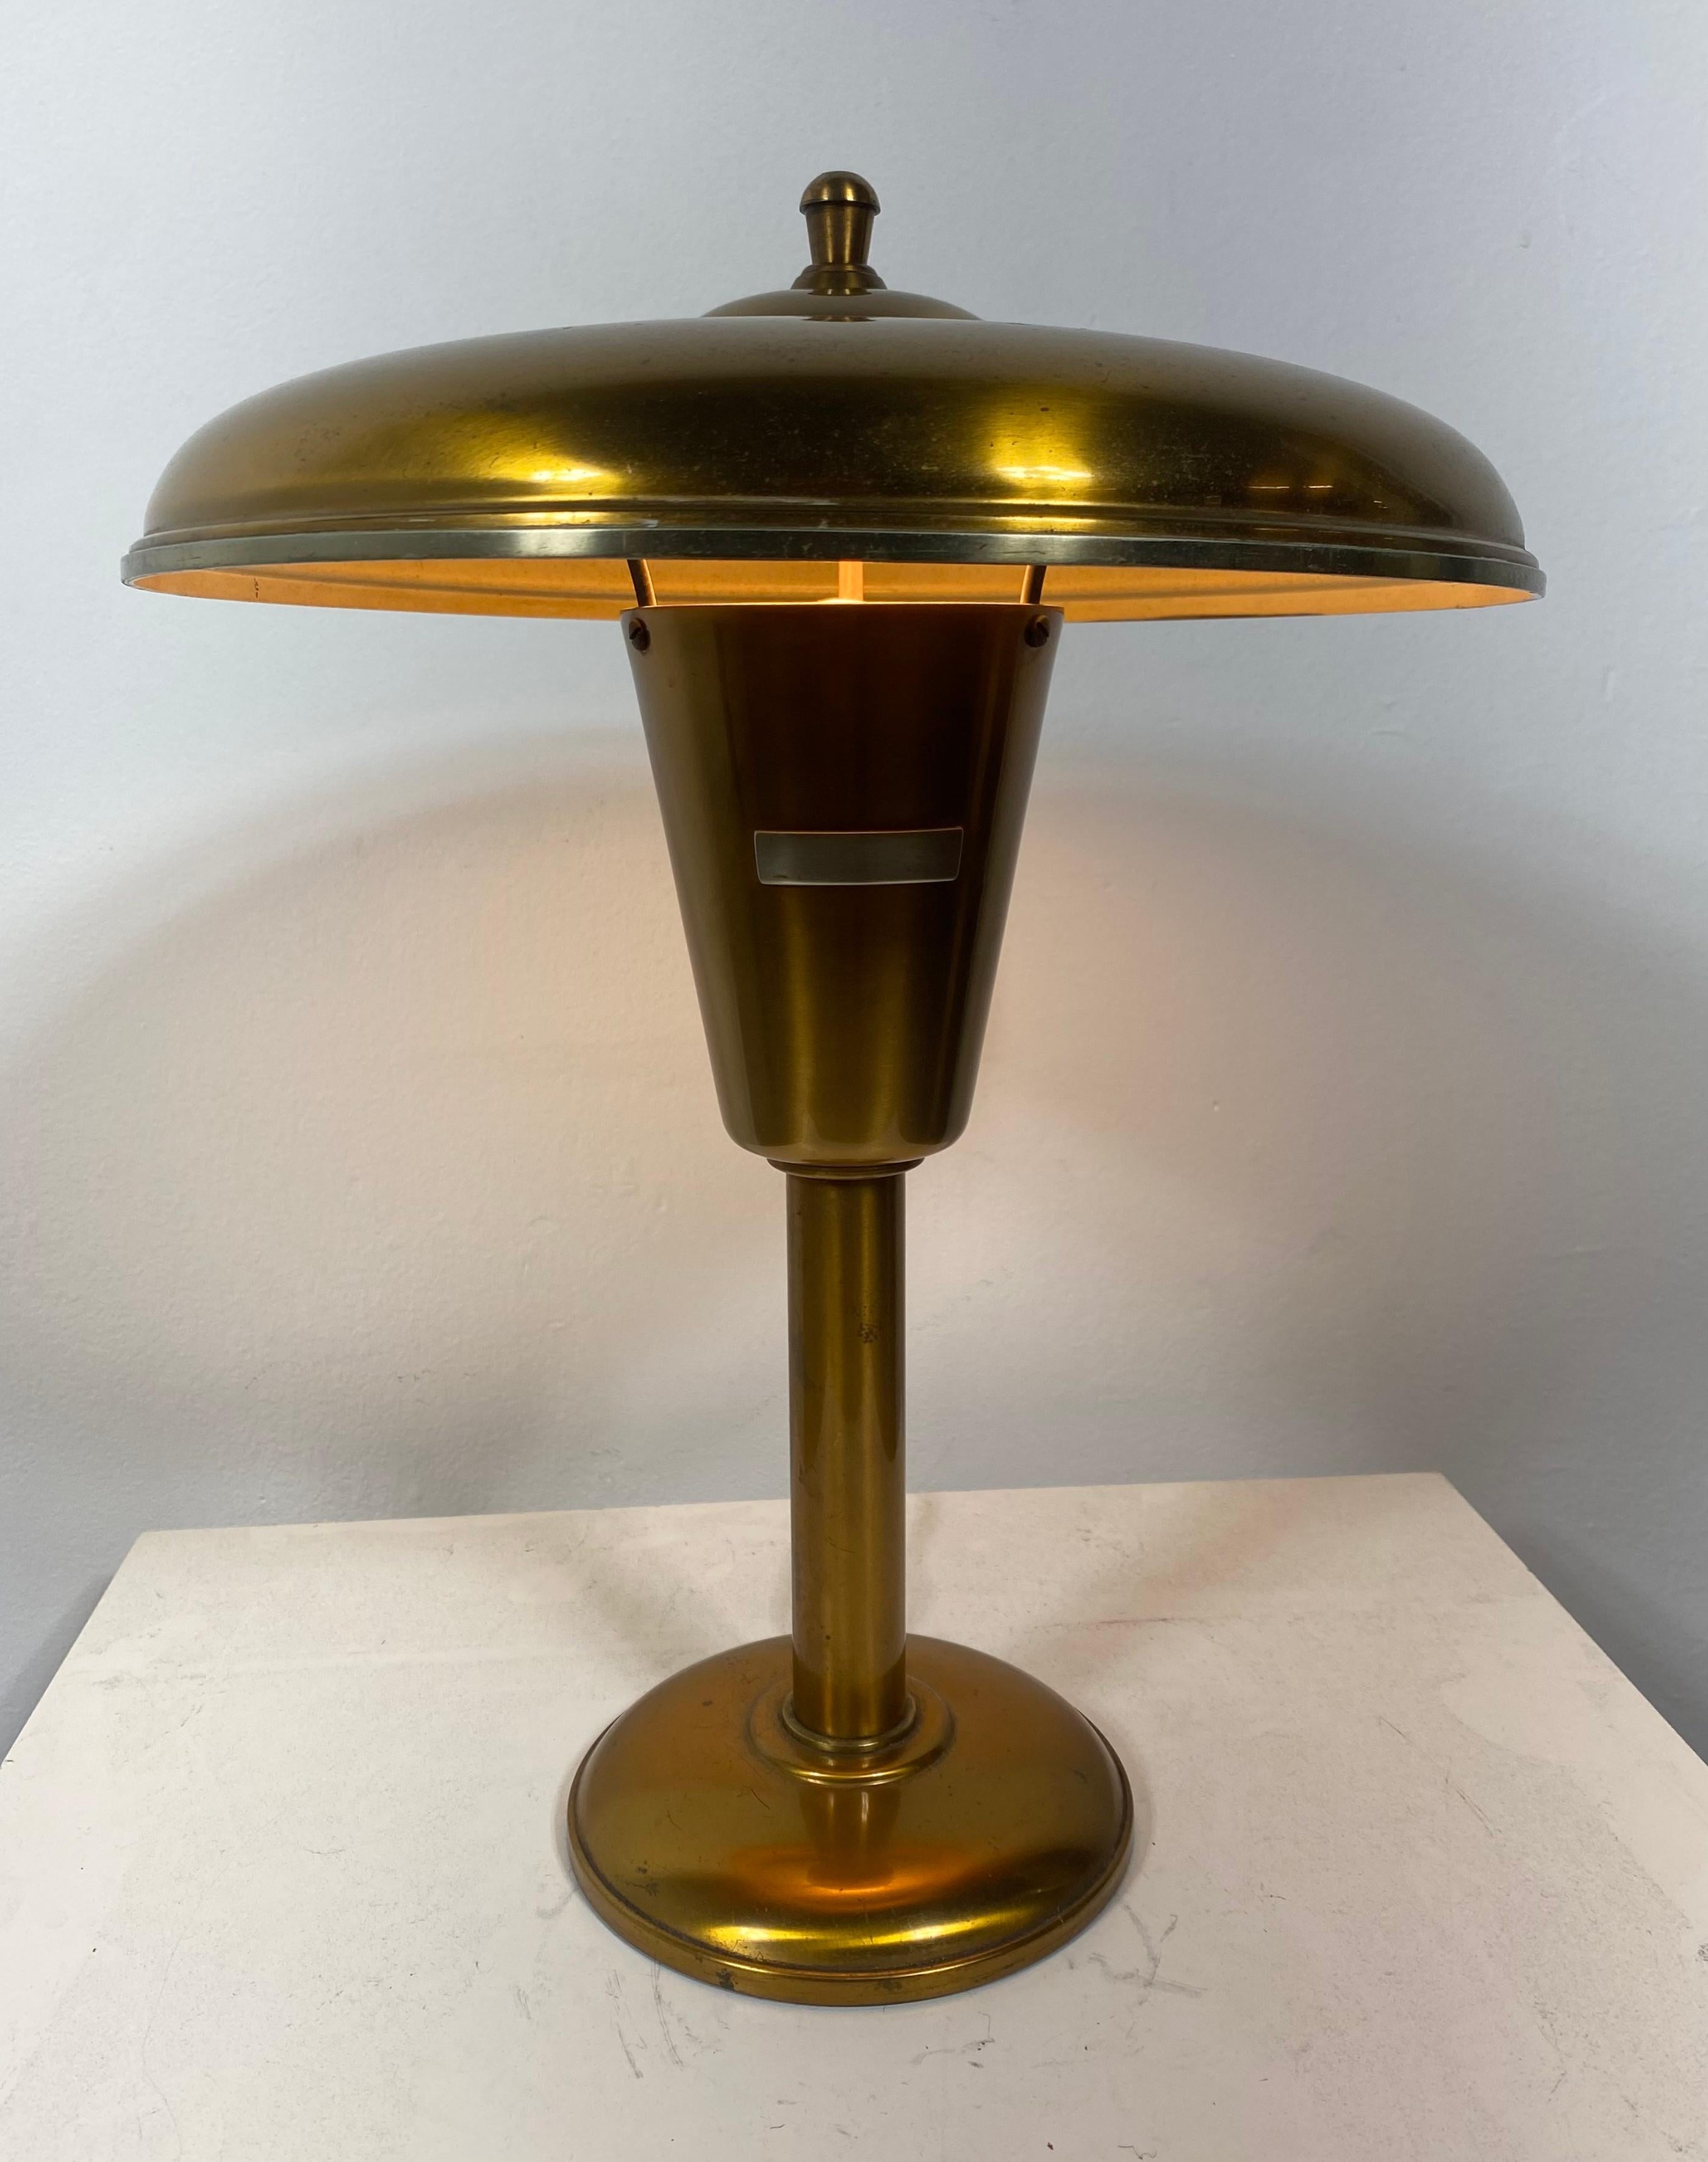 Klassisches amerikanisches Art Deco, Faries Tisch-/Auftragslampe um 1930, schlankes, einfaches, elegantes Design, Normandie-Bronze-Finish. kleiner Schönheitsfehler an der Oberseite des Schirms.